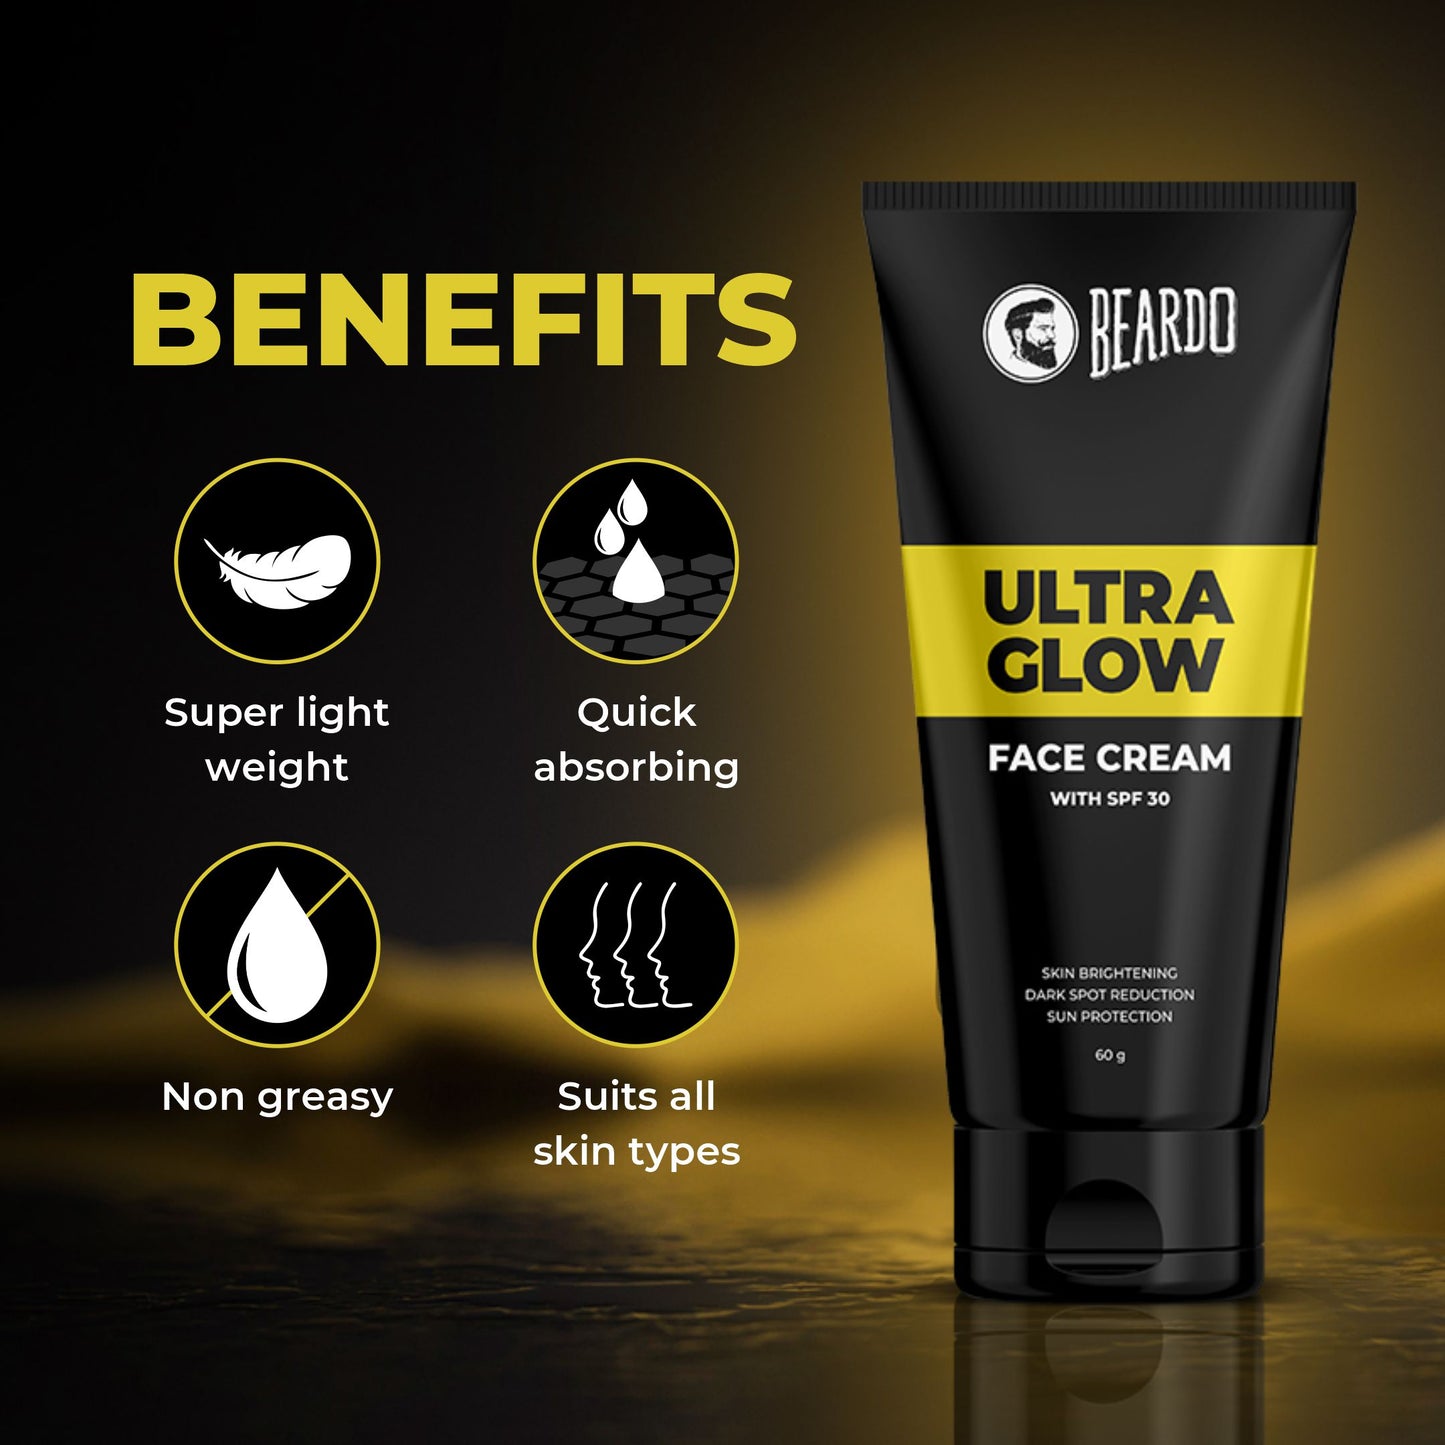 benefits of ultra glow face cream, non greasy cream, non oily cream, all skin types